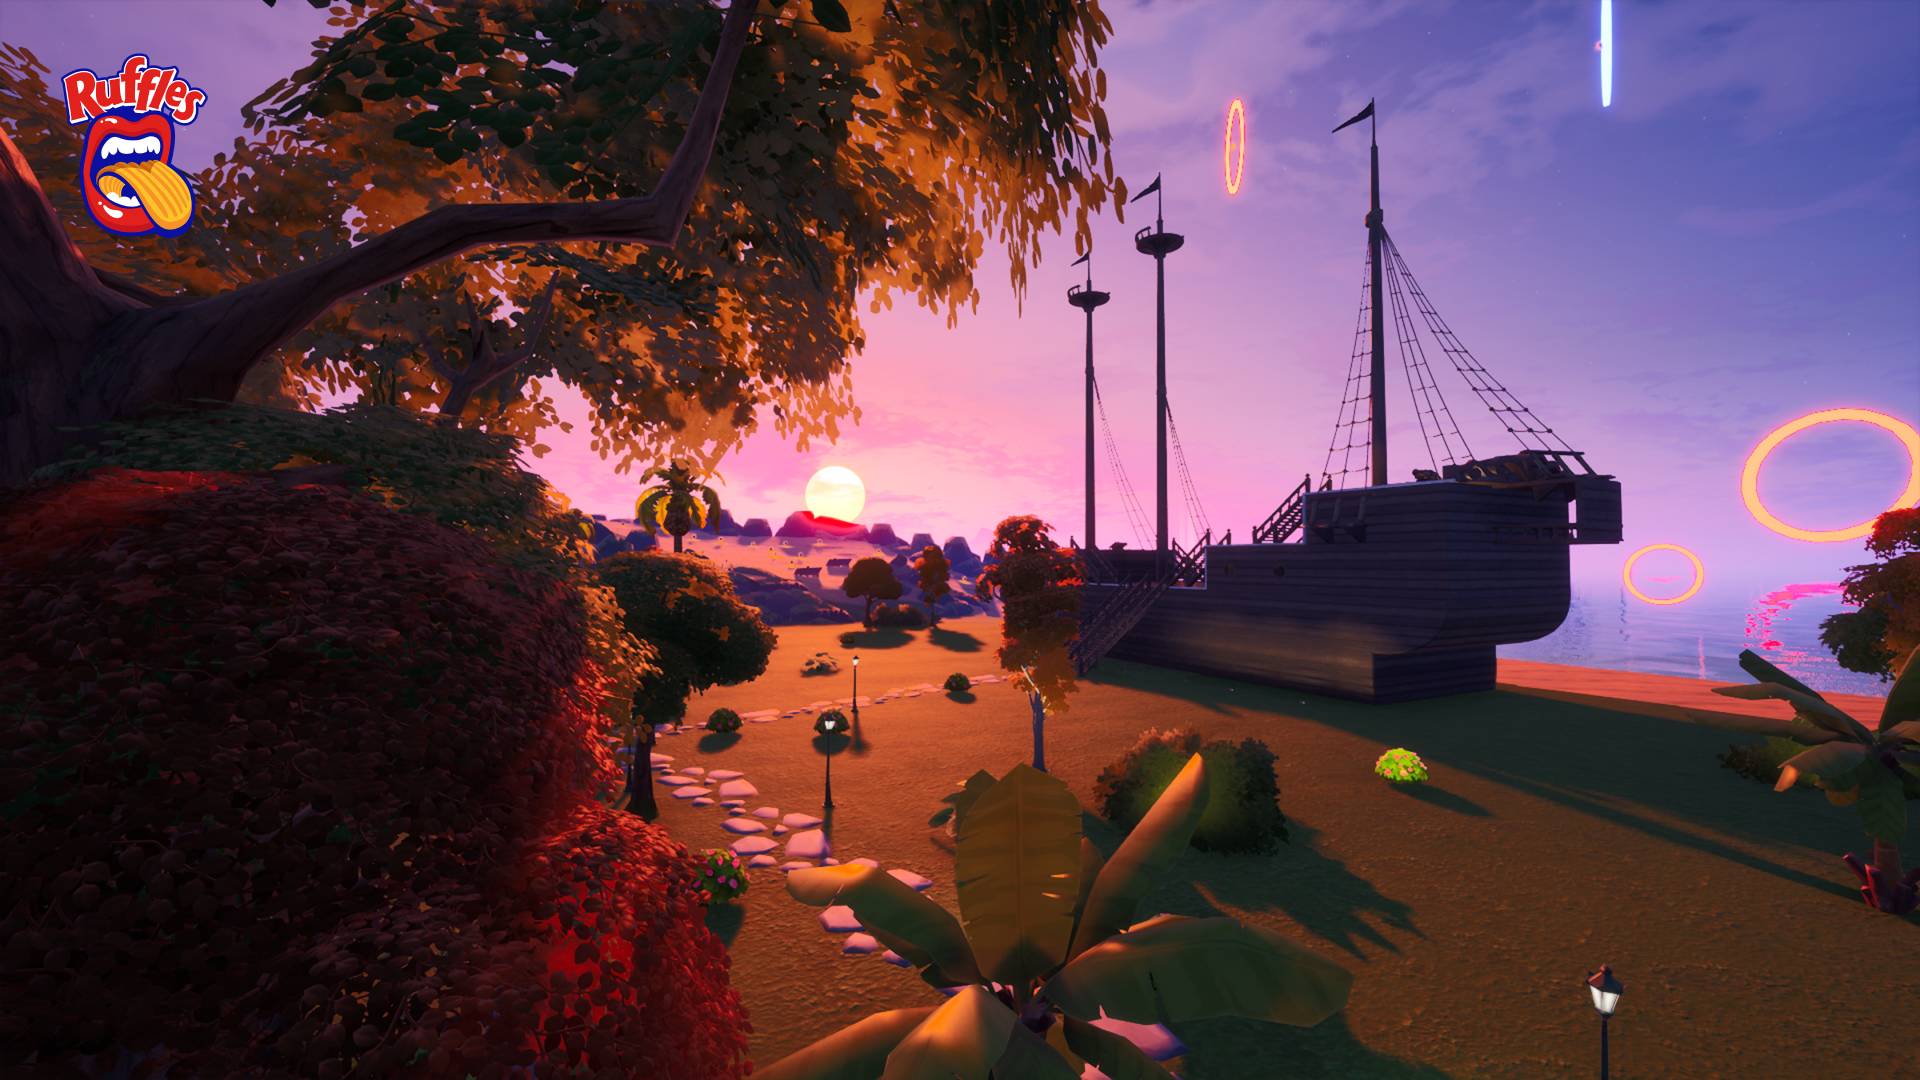 A RUFFLES recria a cidade de Porto Seguro em experiência virtual no jogo Fortnite